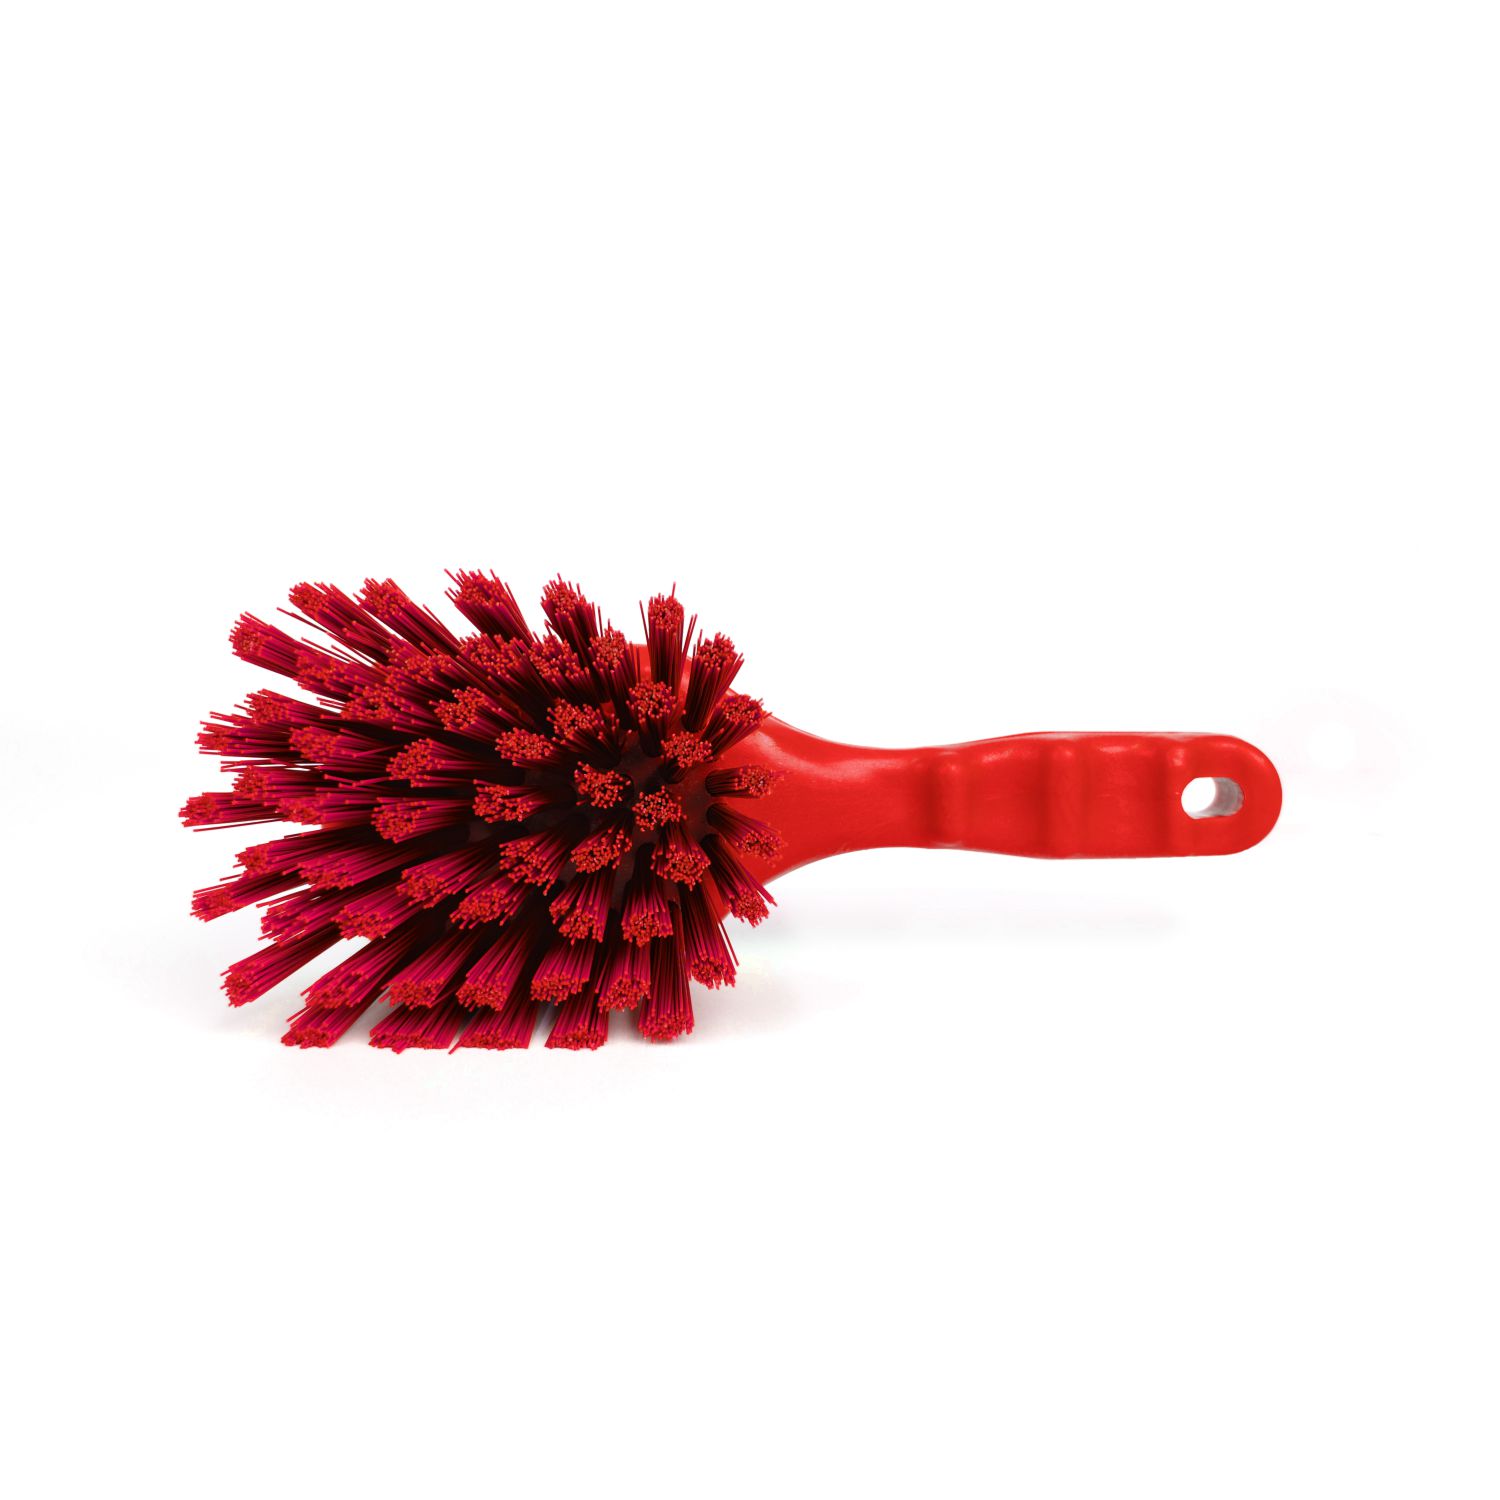 Щетка HACCPER с короткой ручкой для мытья и оттирки, жесткая, красный